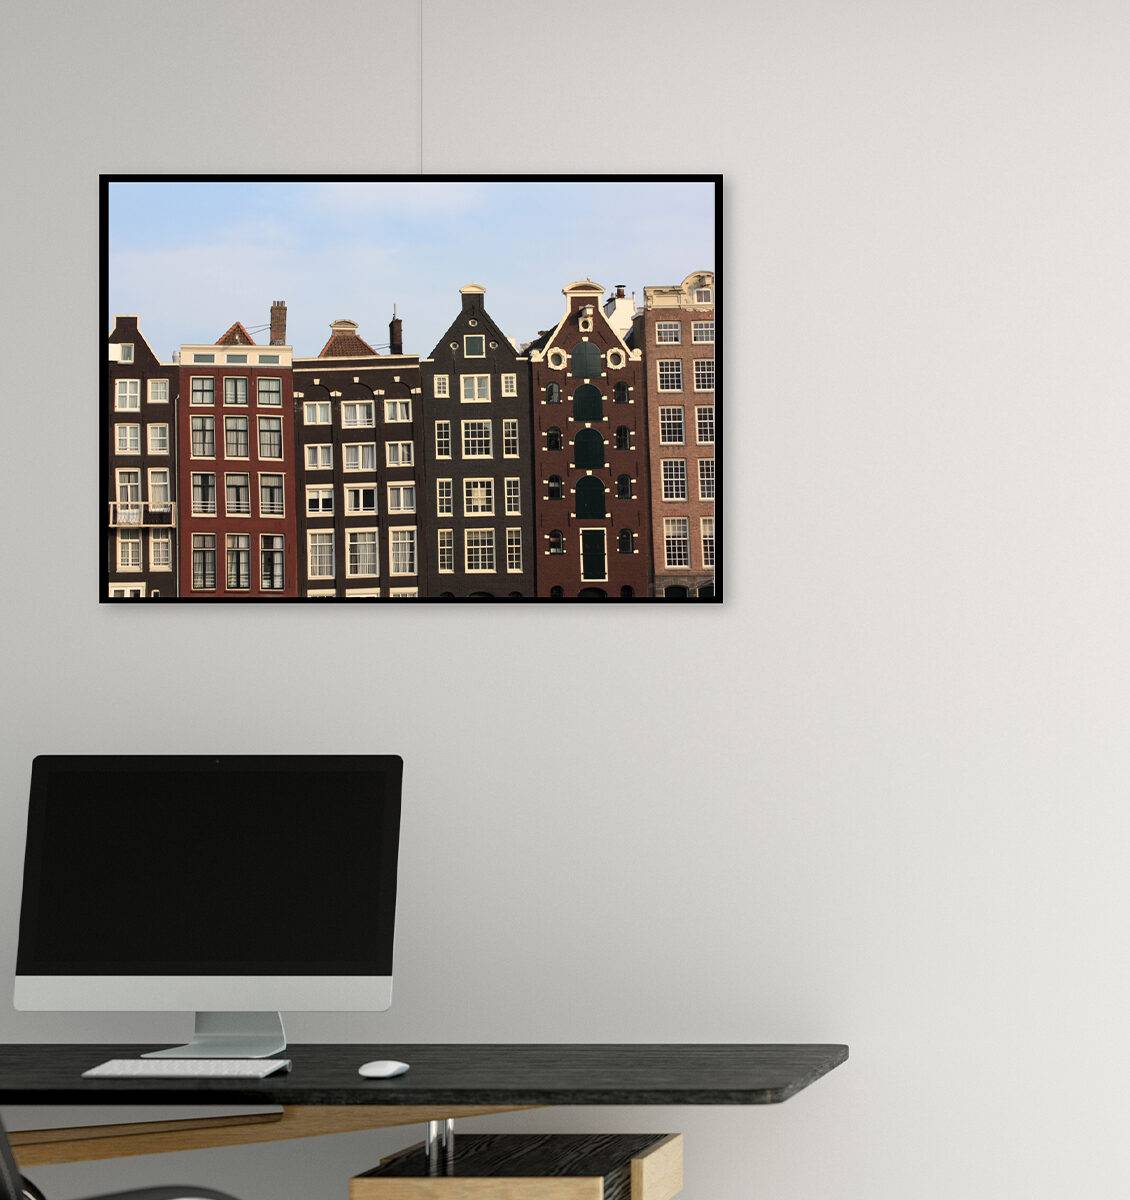 NL kantoorruimte met fotokunst van Amsterdamse huizen aan de wand